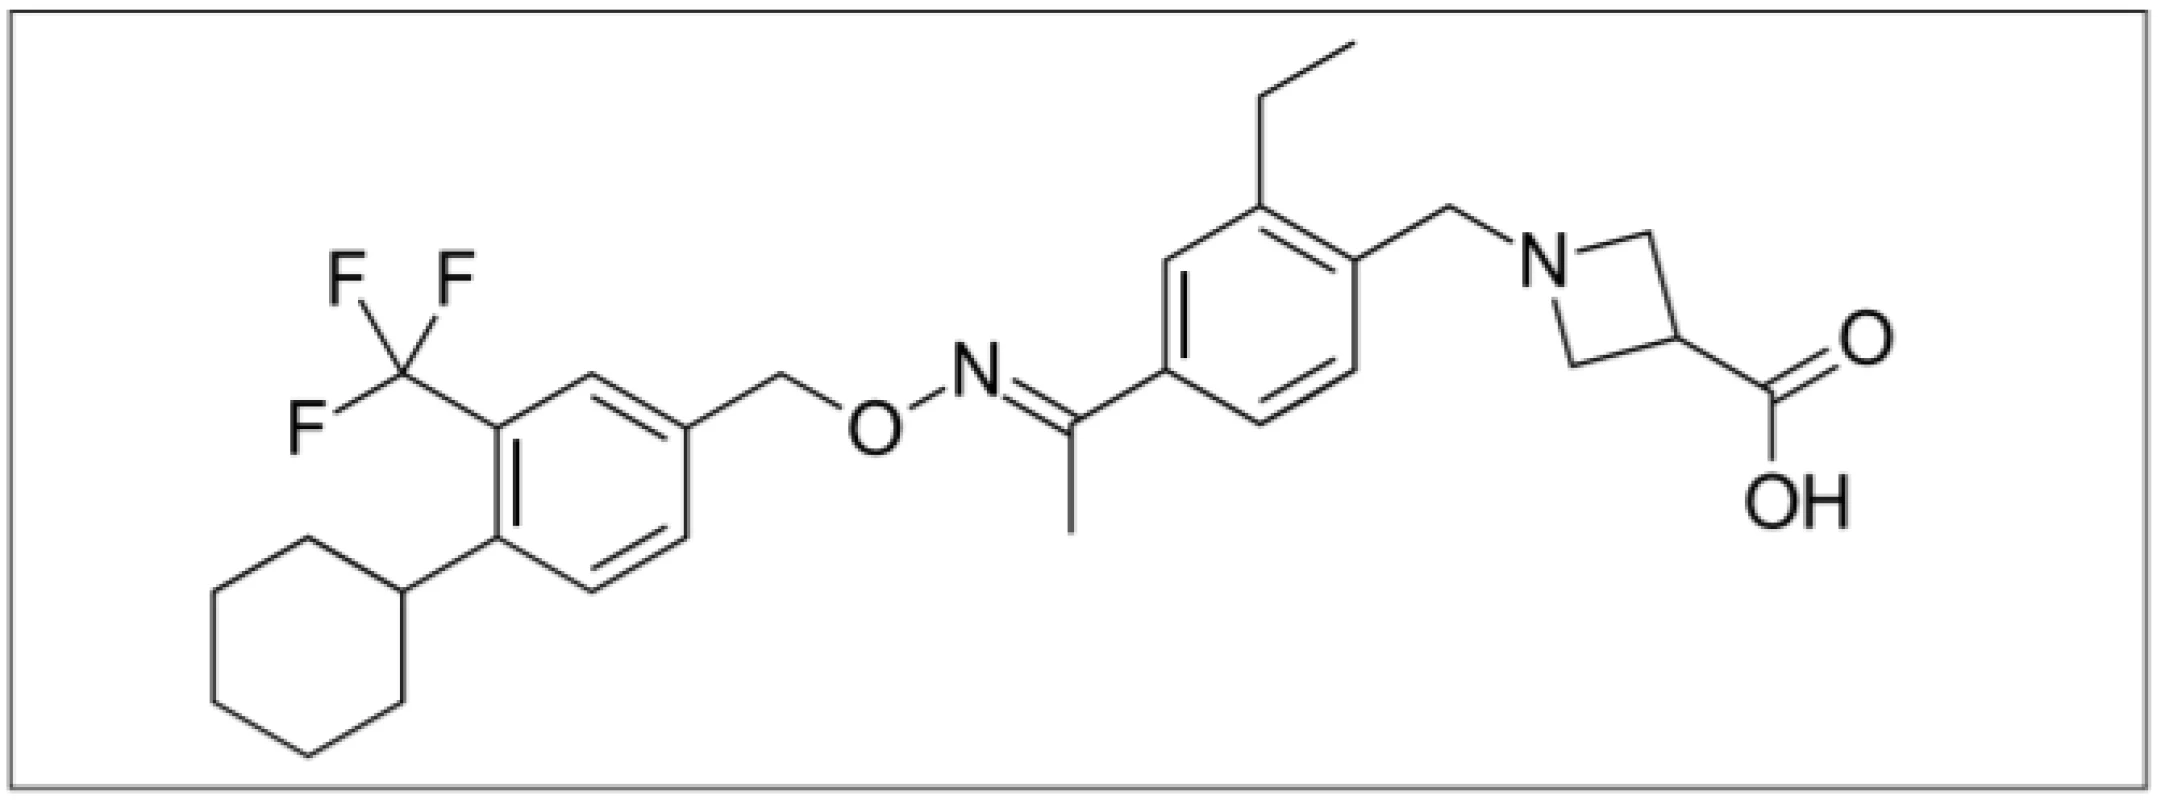  BAF312 (1-(4-{1-[(E)-4-cyclohexyl3 – trifl uoromethylbenzyloxyimino]-ethyl}-2-
ethylbenzyl)- azetidine-3-carboxylic acid) selektivní modulátor S1P1 a S1P5 receptorů
umožňující S1P1 receptorově-závislou modulaci transportu lymfocytů bez mediačního
účinku S1P3 receptoru [12].<br>
Fig. 1. BAF312 (1-(4-{1-[(E)-4-cyclohexyl-3 – trifl uoromethylbenzyloxyimino]-ethyl}-2-
ethylbenzyl)- azetidine-3-carboxylic acid) selective modulator of S1P1 a S1P5 receptors
enabling S1P1 receptor-dependent lymphocyte transport without the eff ect of the S1P3
receptor [12].